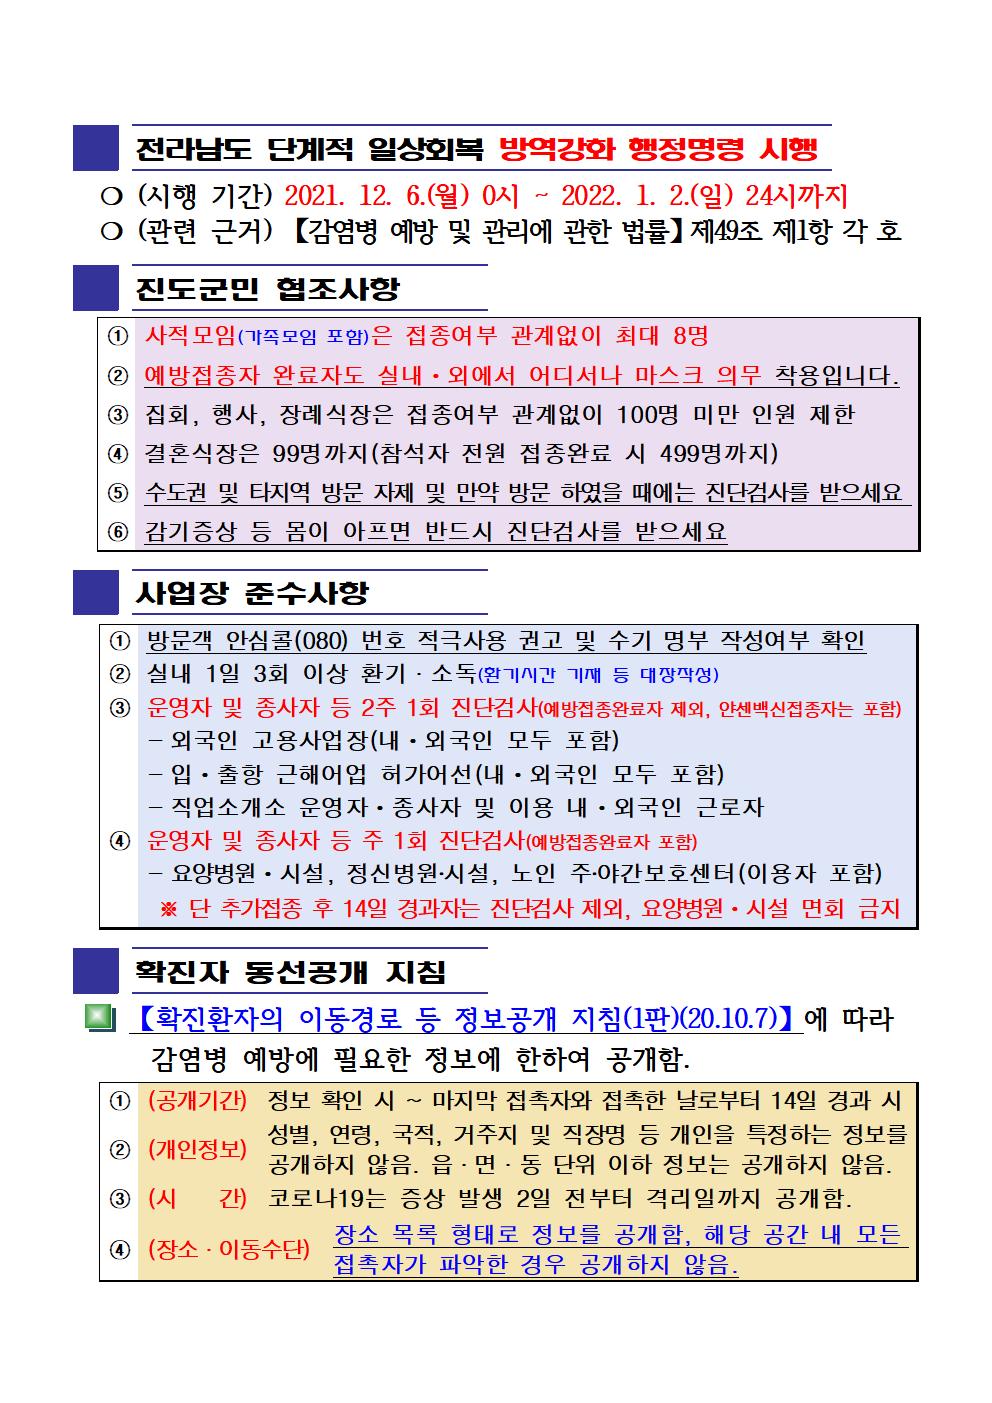 2021년 코로나 19 대응 일일상황보고(12월 5일 24시 기준) 첨부#2